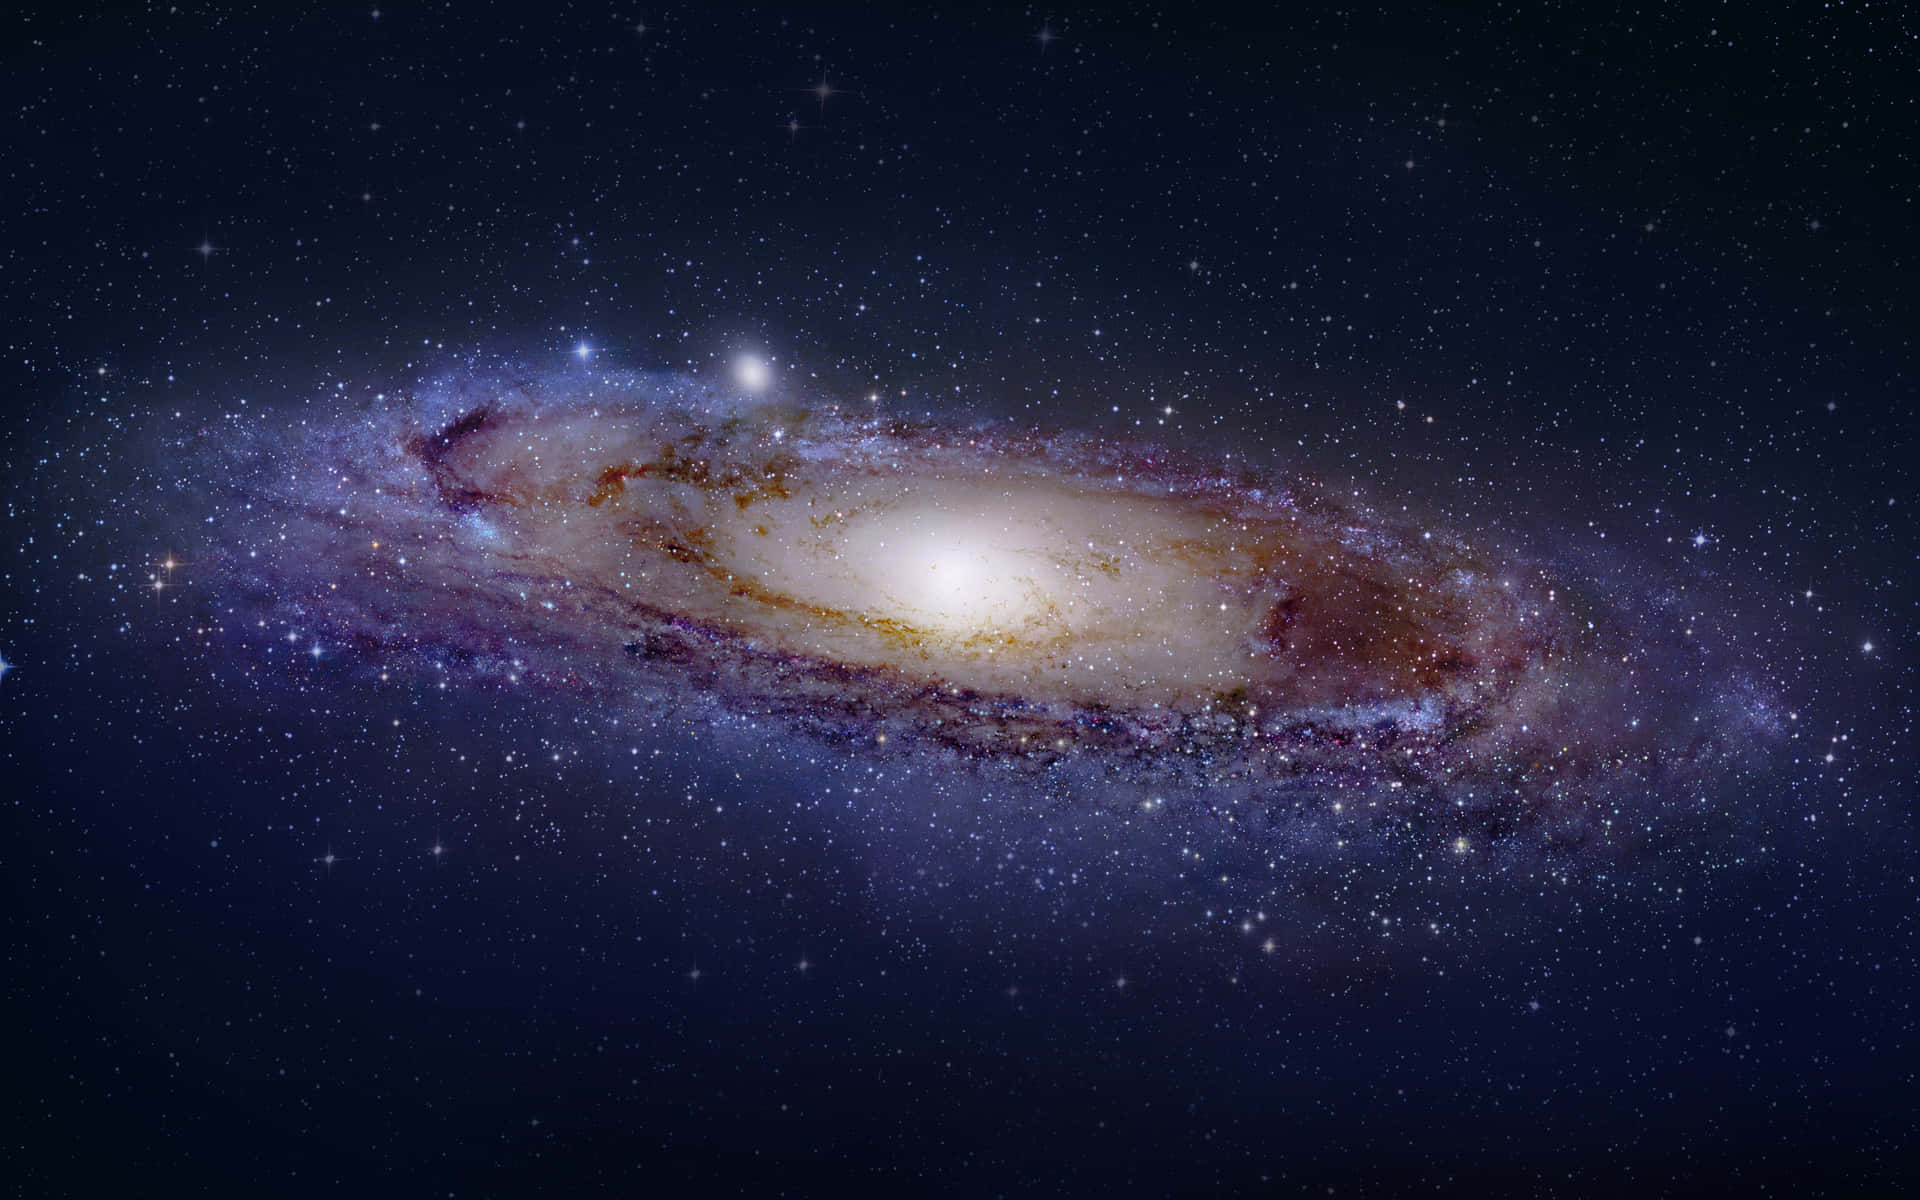 Andromeda Galaxy 4k 4000 X 2500 Wallpaper